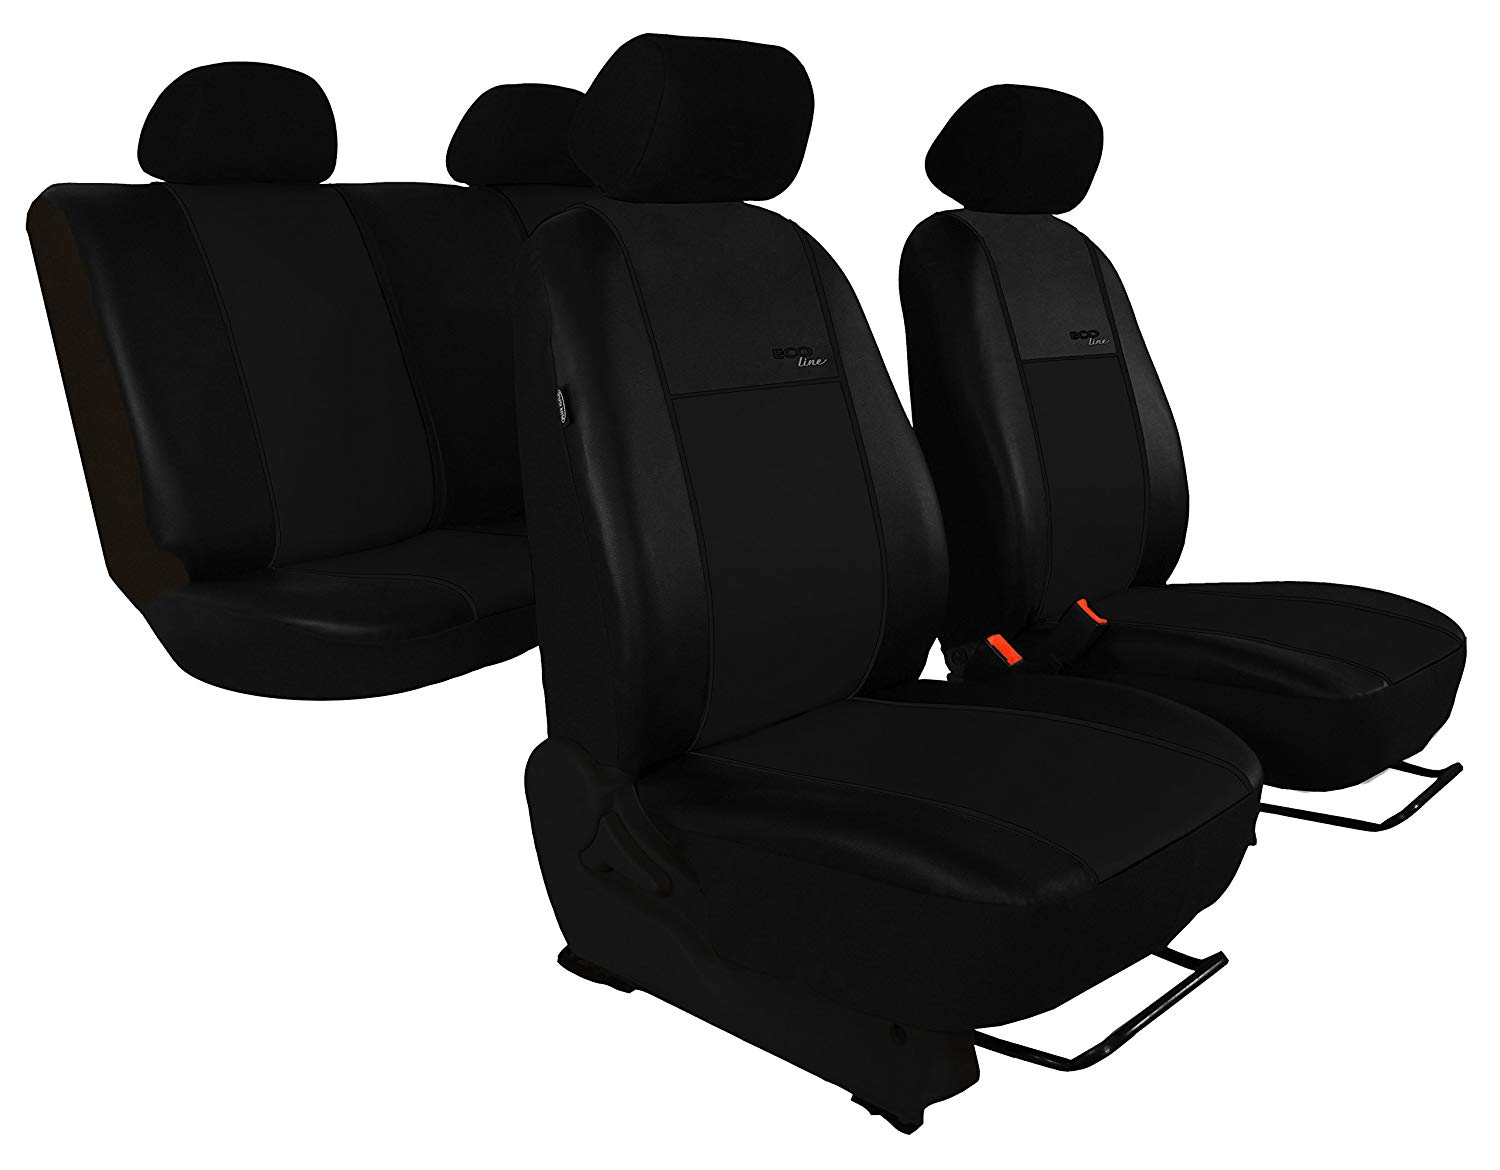 Car seat cover set for RAV4 Hybrid 2016 from Design Eco-Line Black Plate.